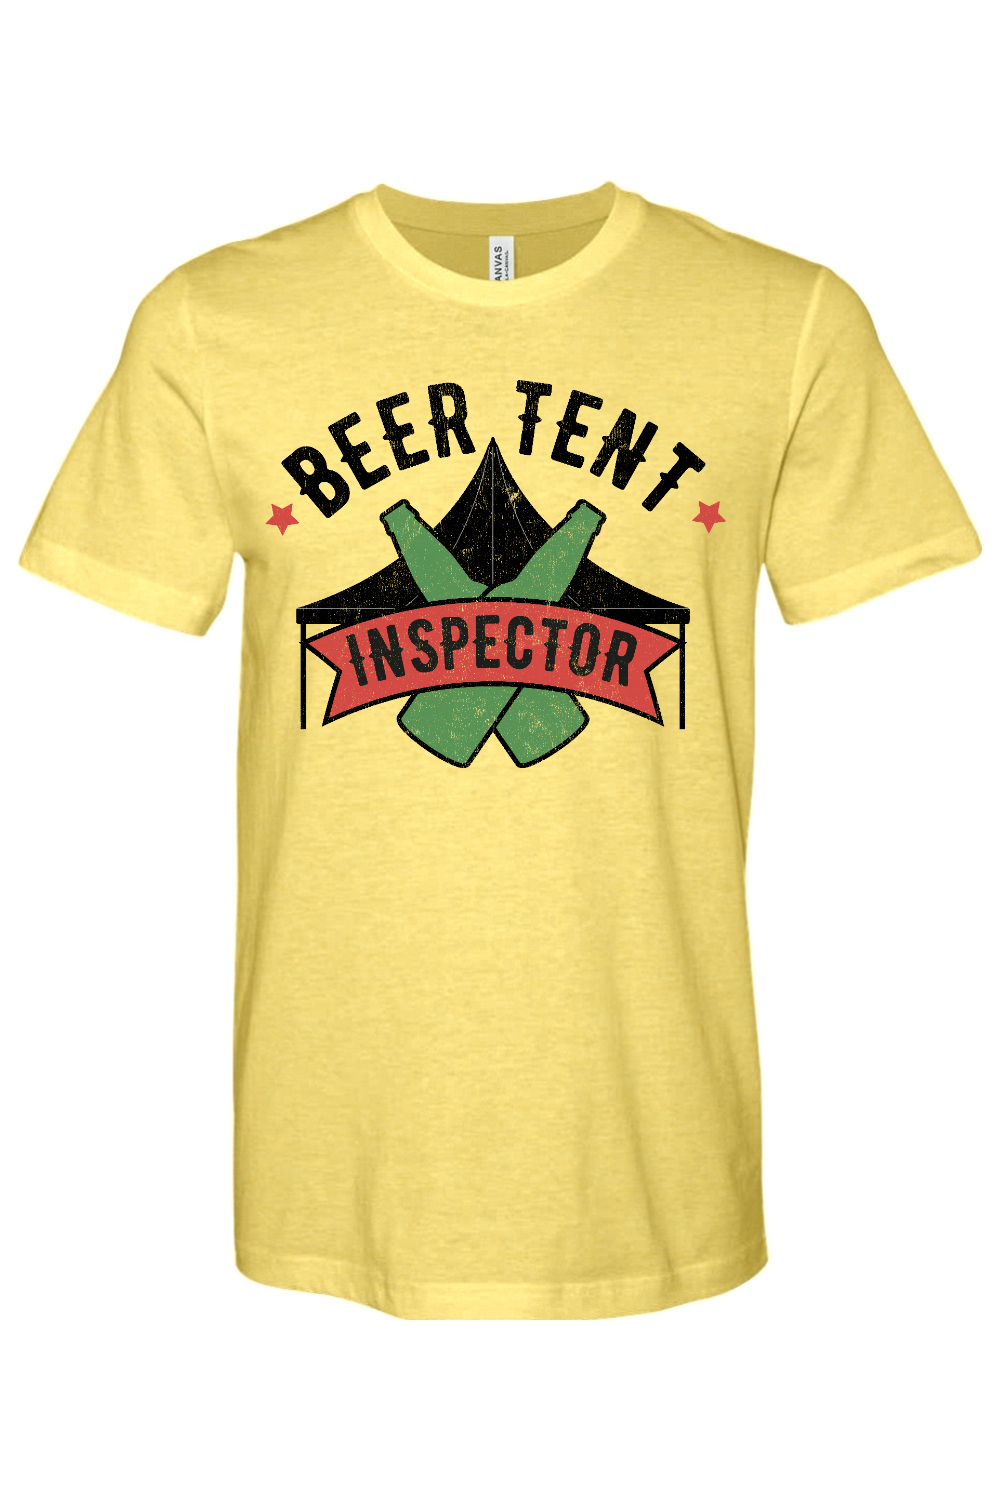 Beer Tent Inspector - Yinzylvania